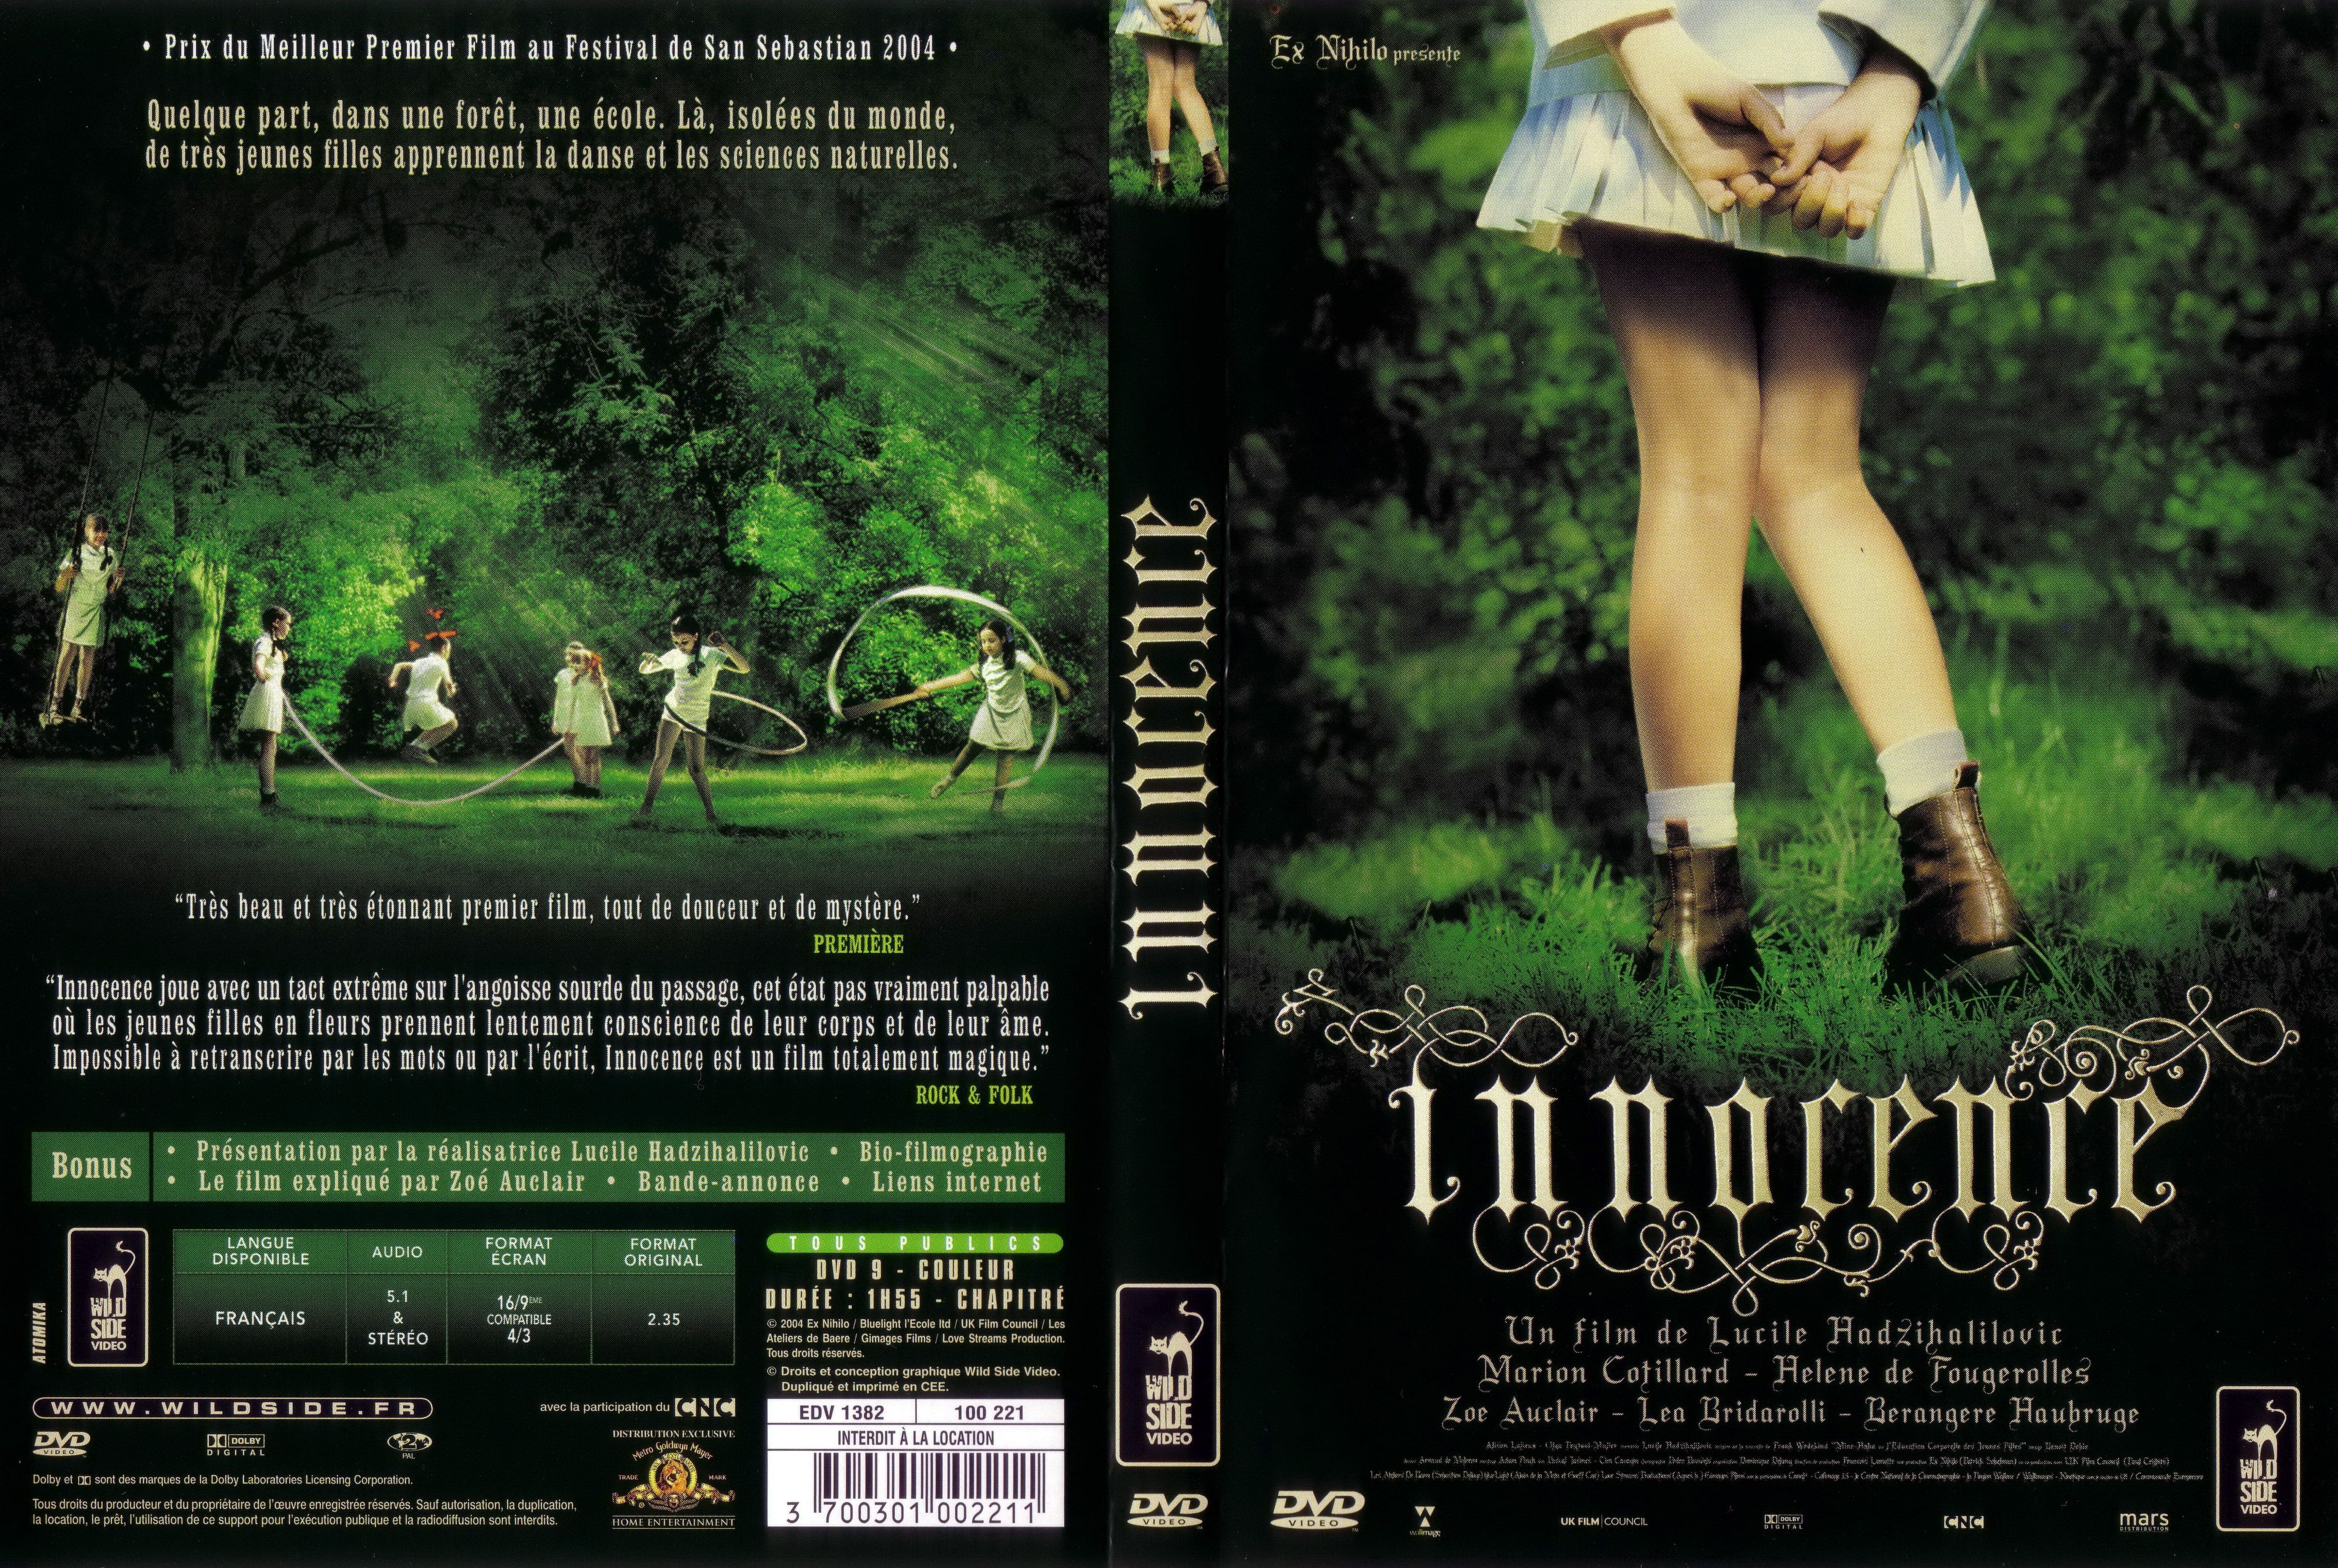 Jaquette DVD Innocence v2